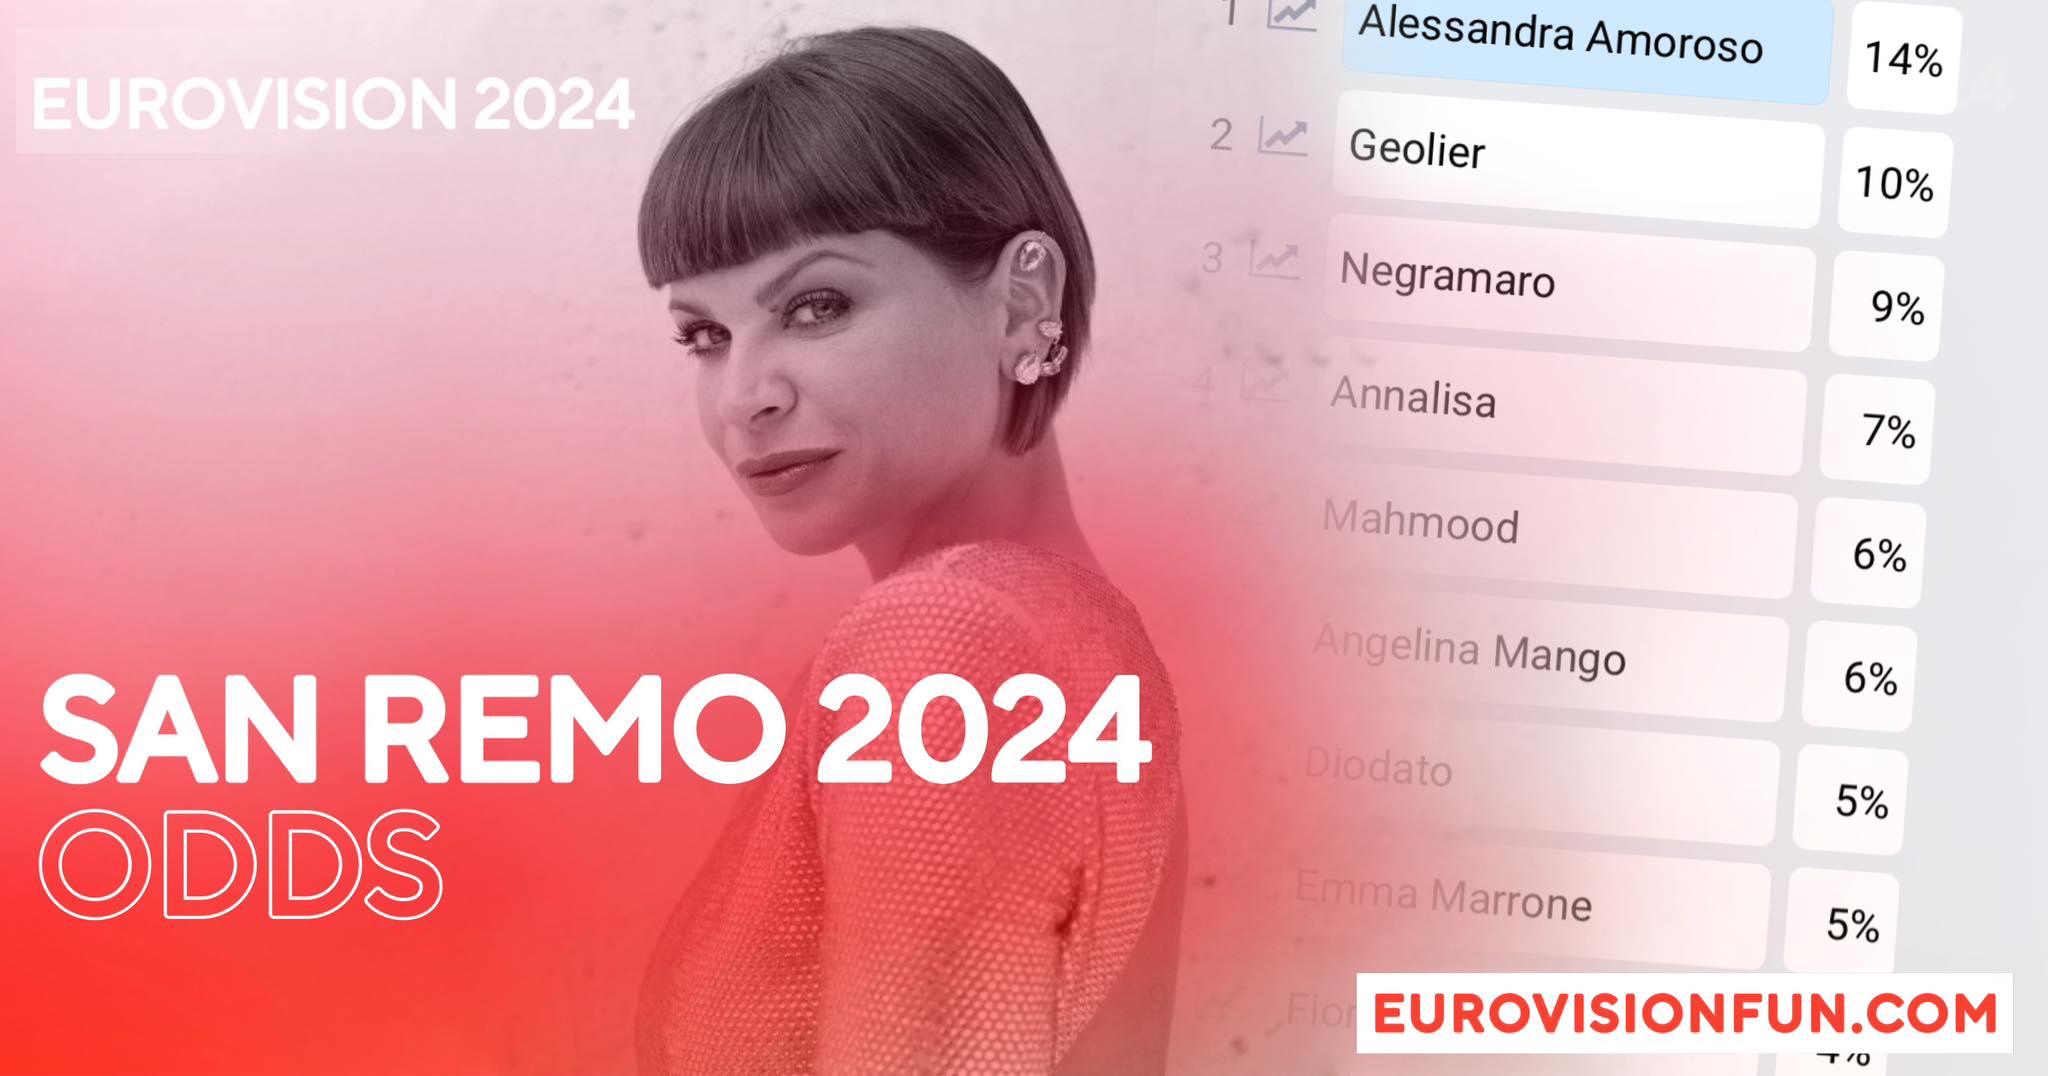 Italia: Alessandra Amoroso nuova favorita per vincere Sanremo 2024!  – Notizie Eurovisione |  Musica